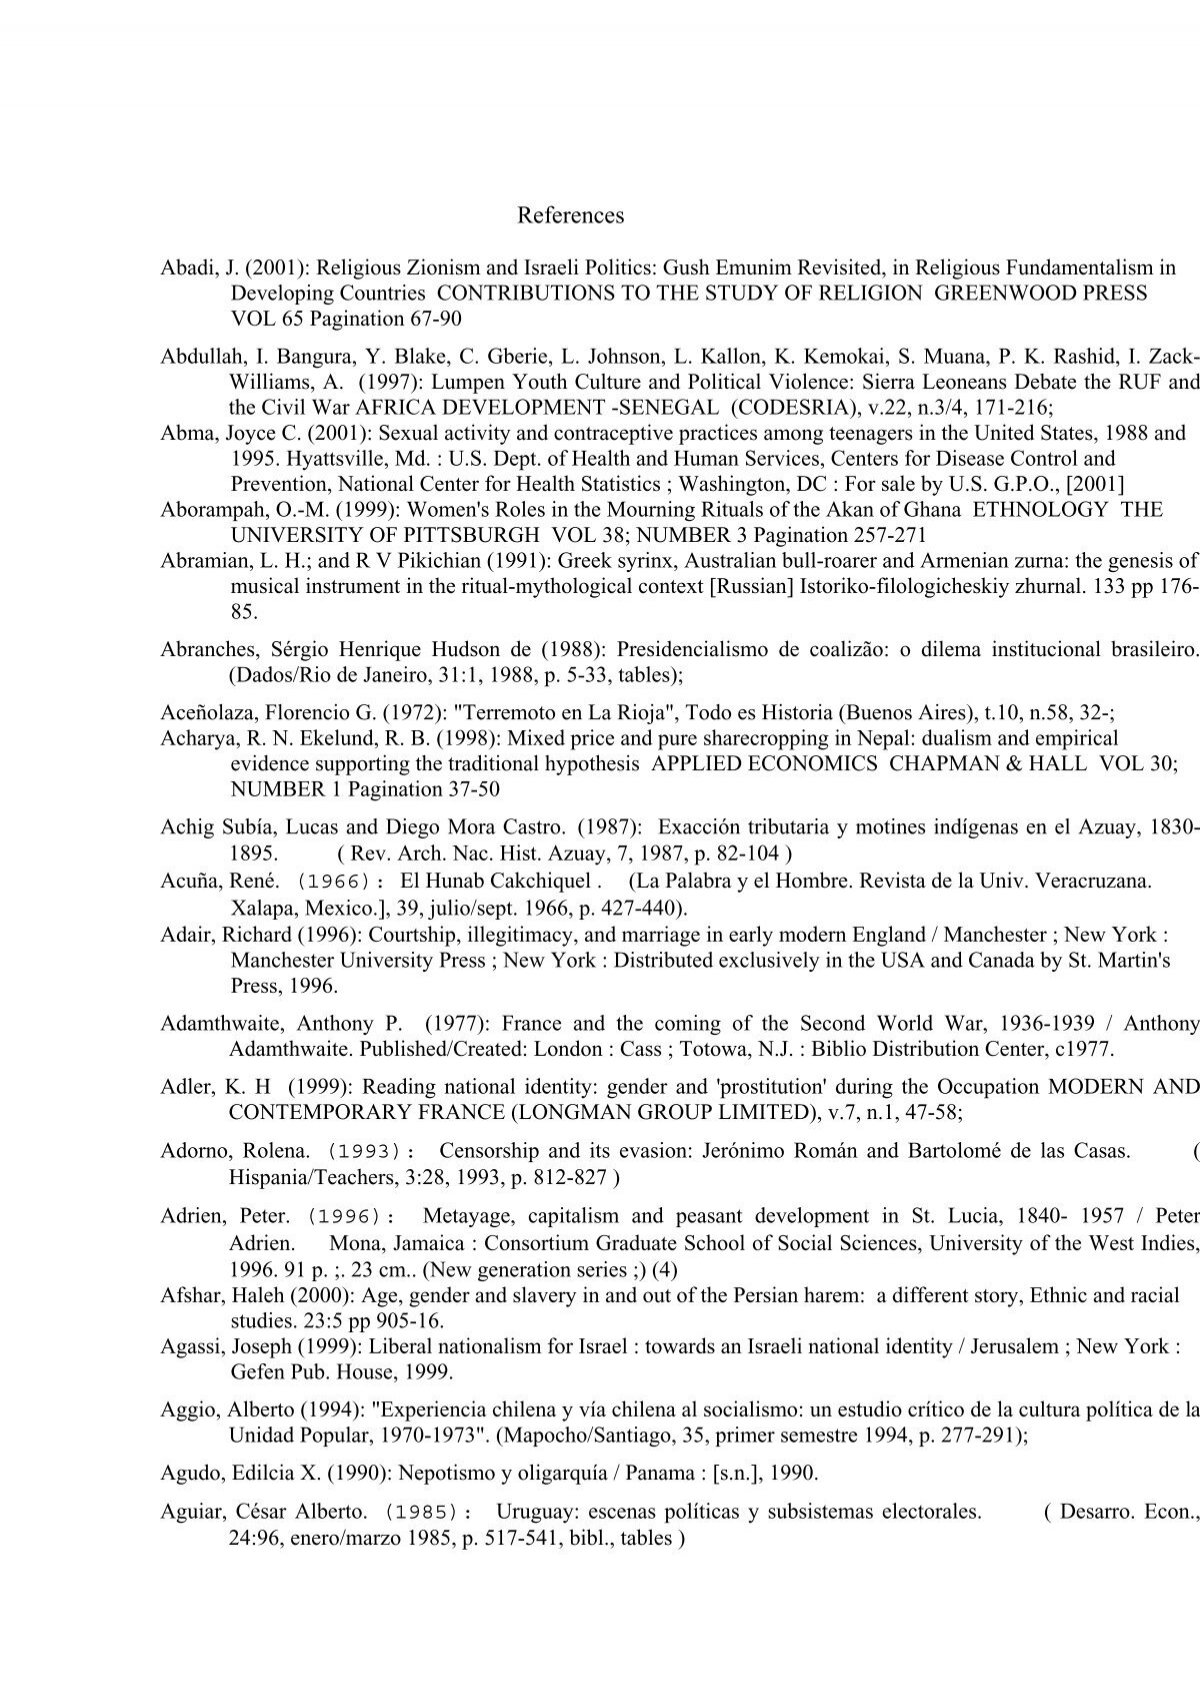  CRONICA DEL TRAJE MILITAR EN MEXICO DEL SIGLO XVI AL XX: David  A. (Editor) BARR: Libros